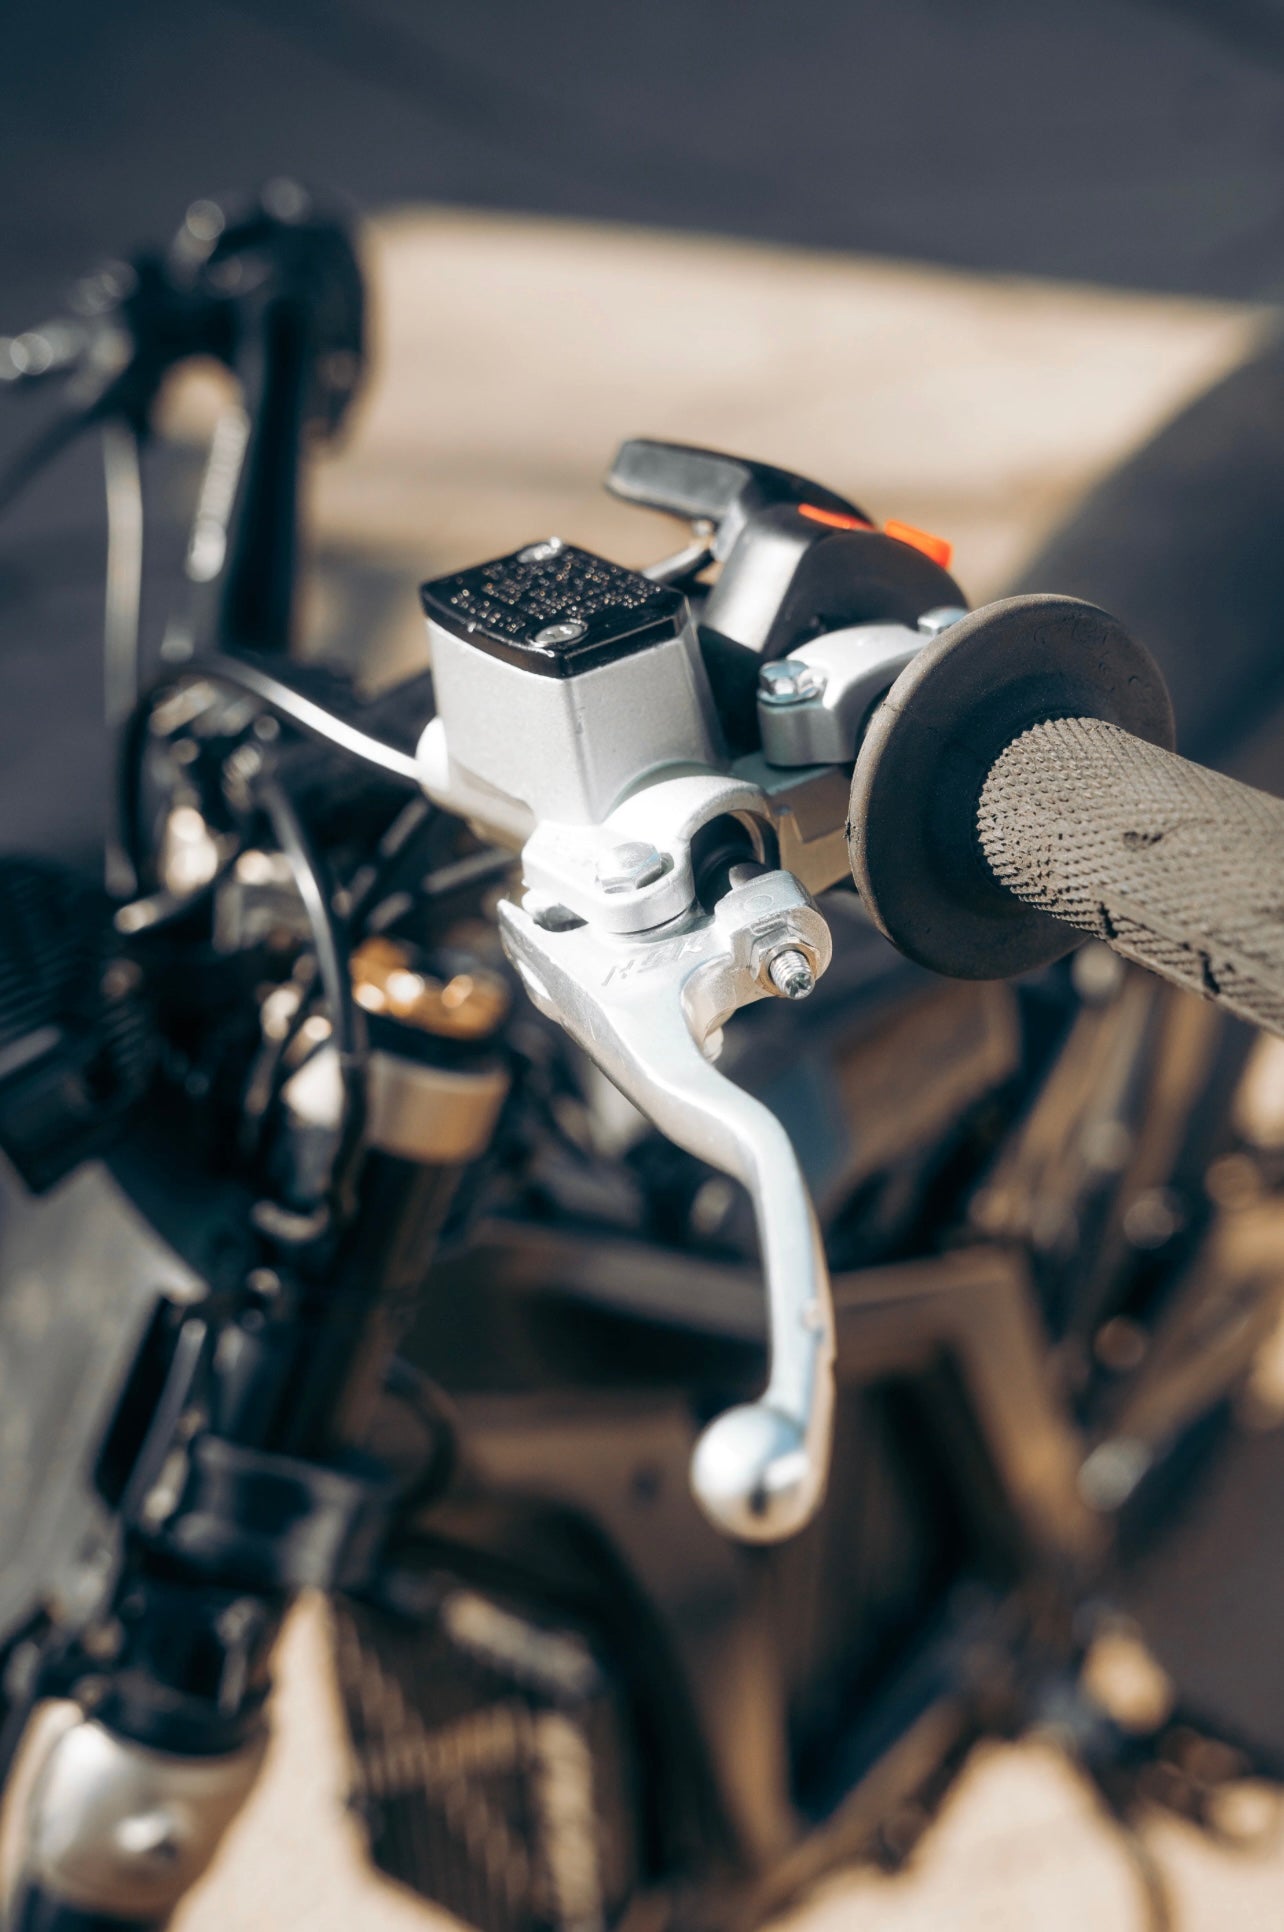 Budget Rear Moto Brake Kit